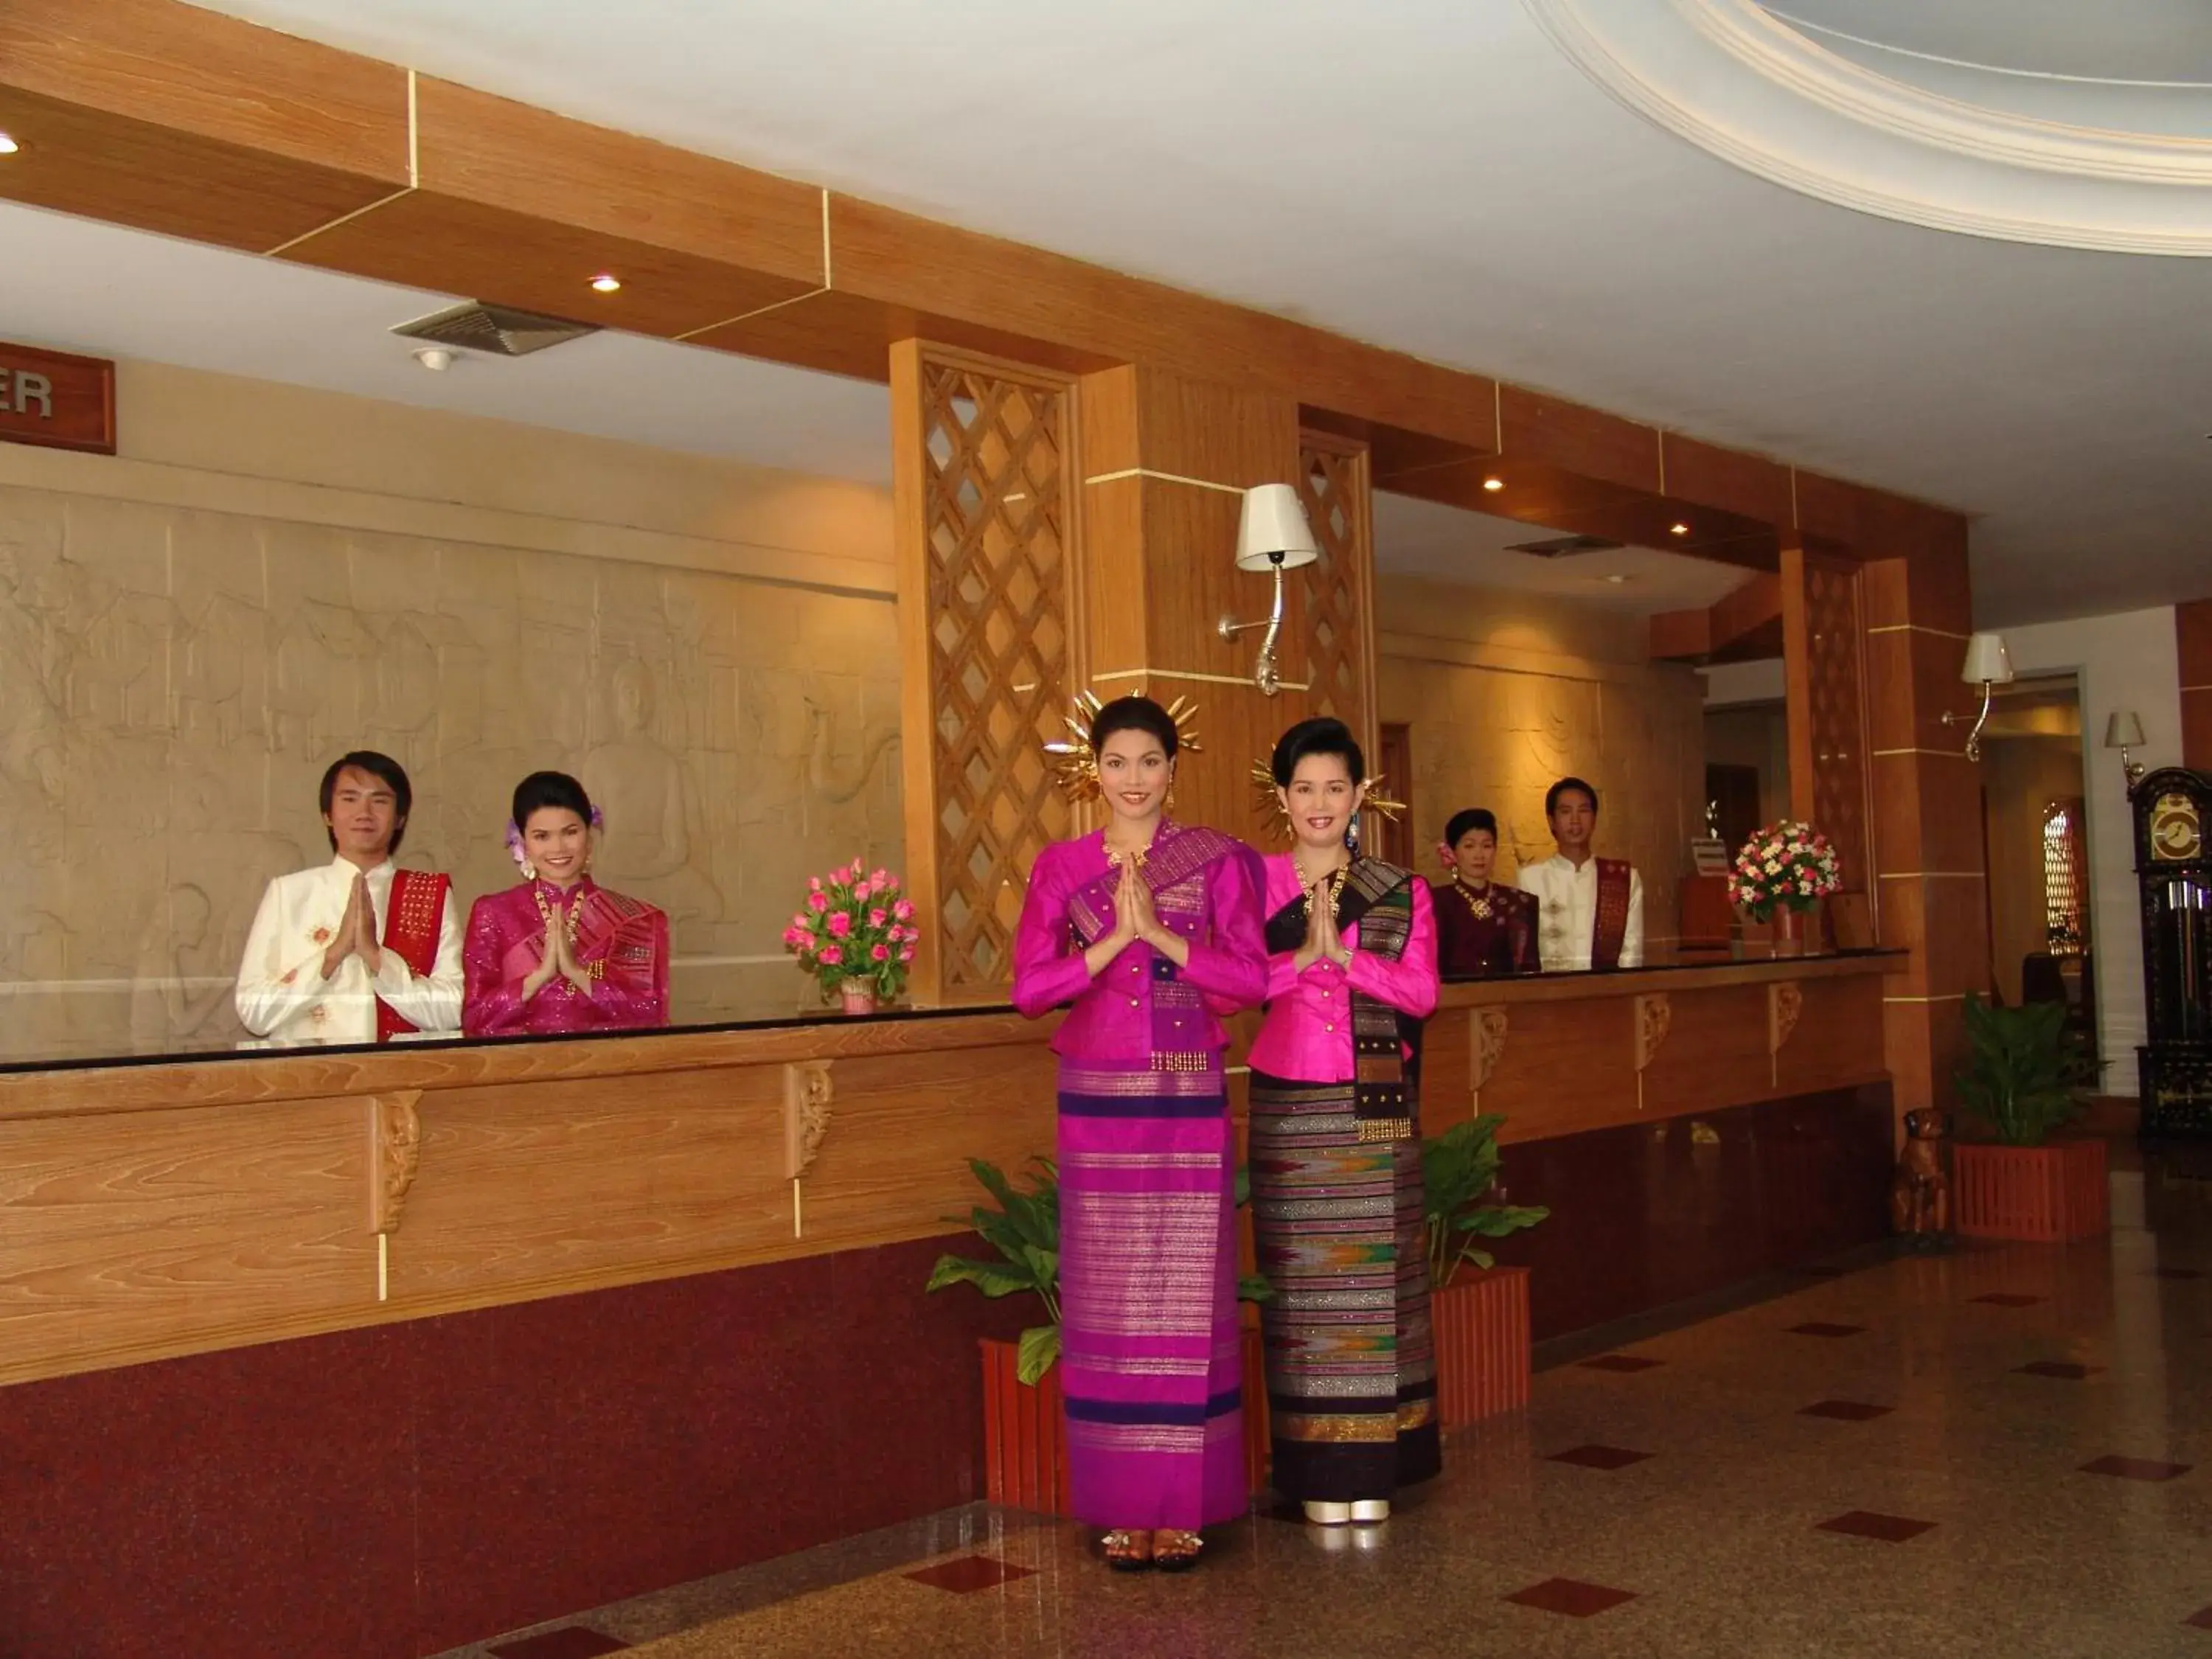 Lobby or reception in Dhevaraj Hotel